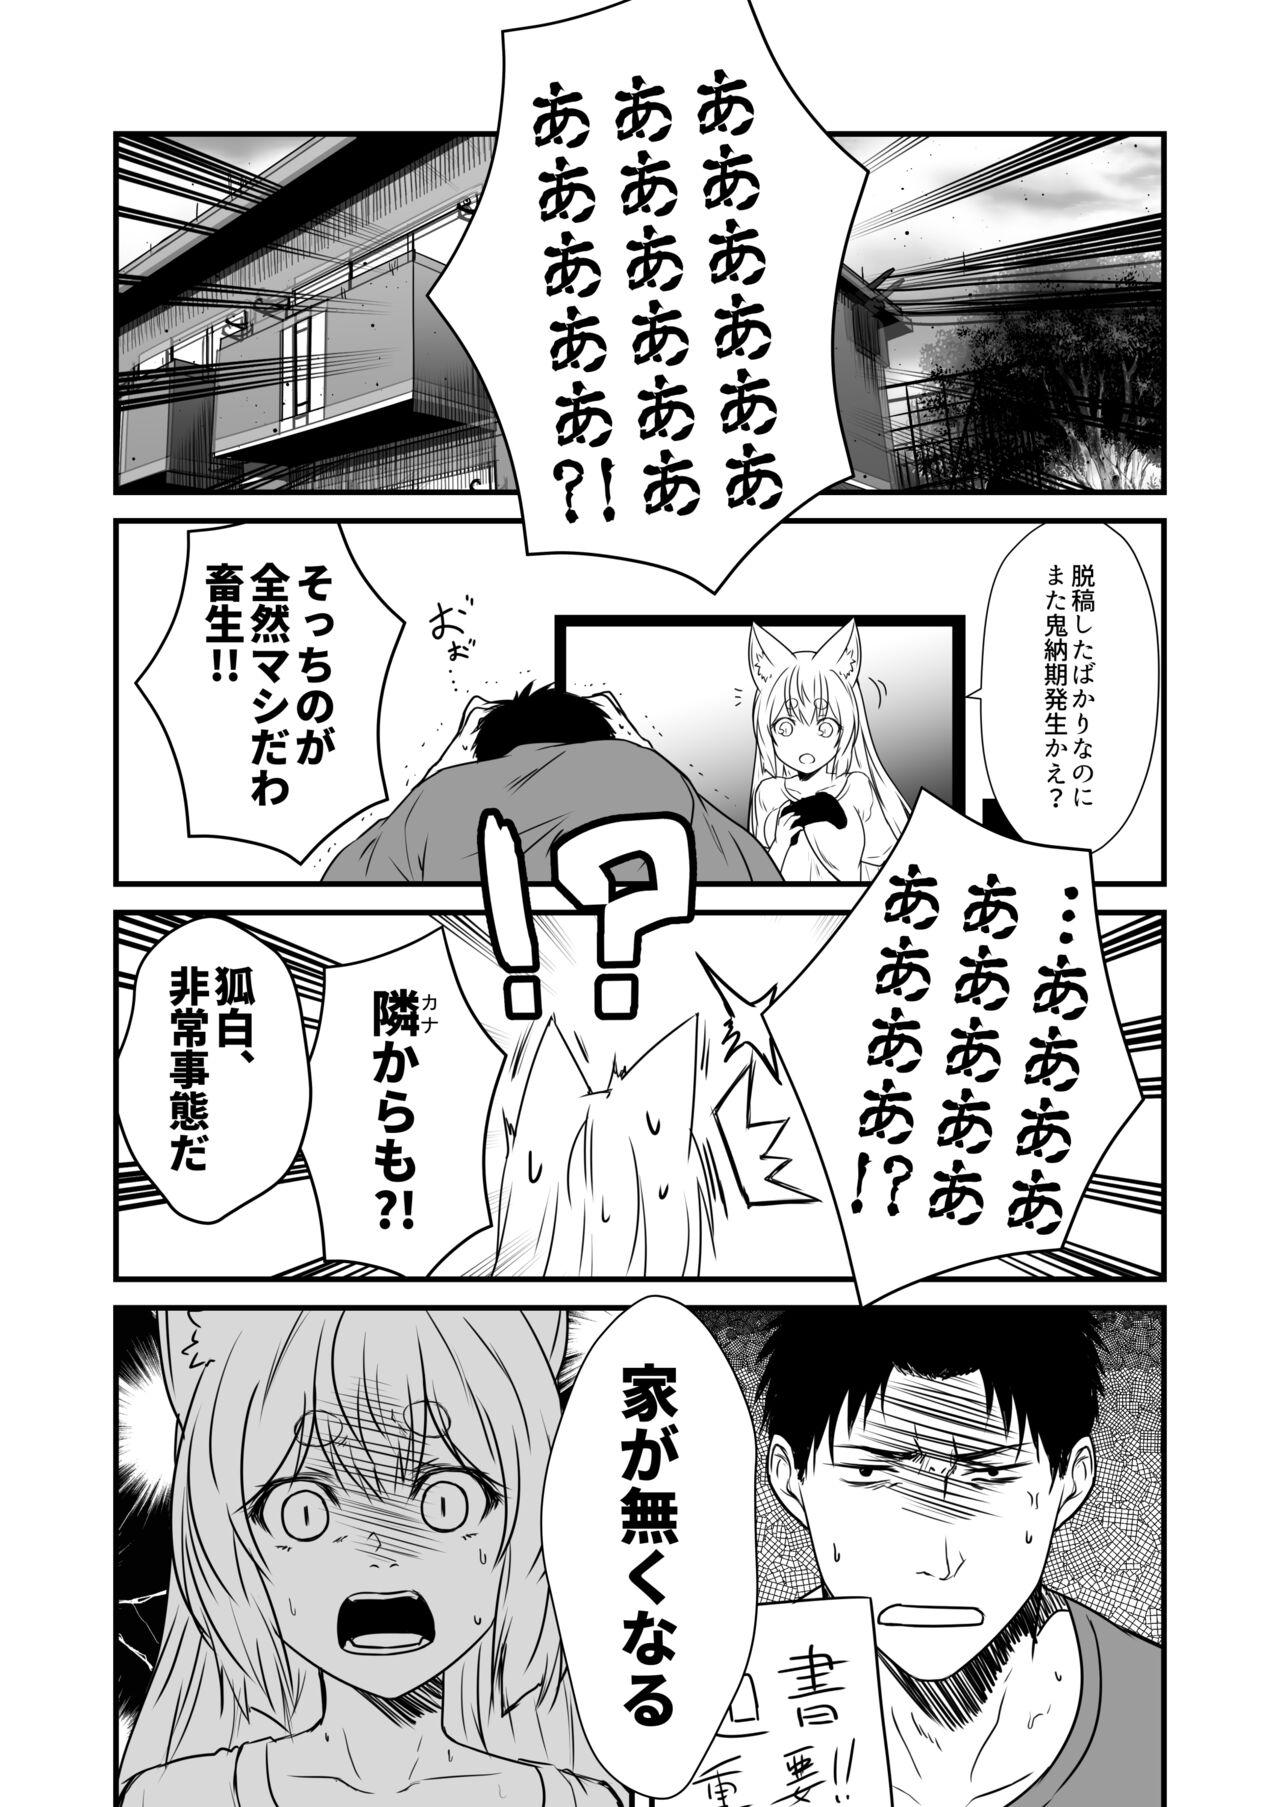 No Condom Kohaku Biyori Vol. 8 - Original Sharing - Page 4